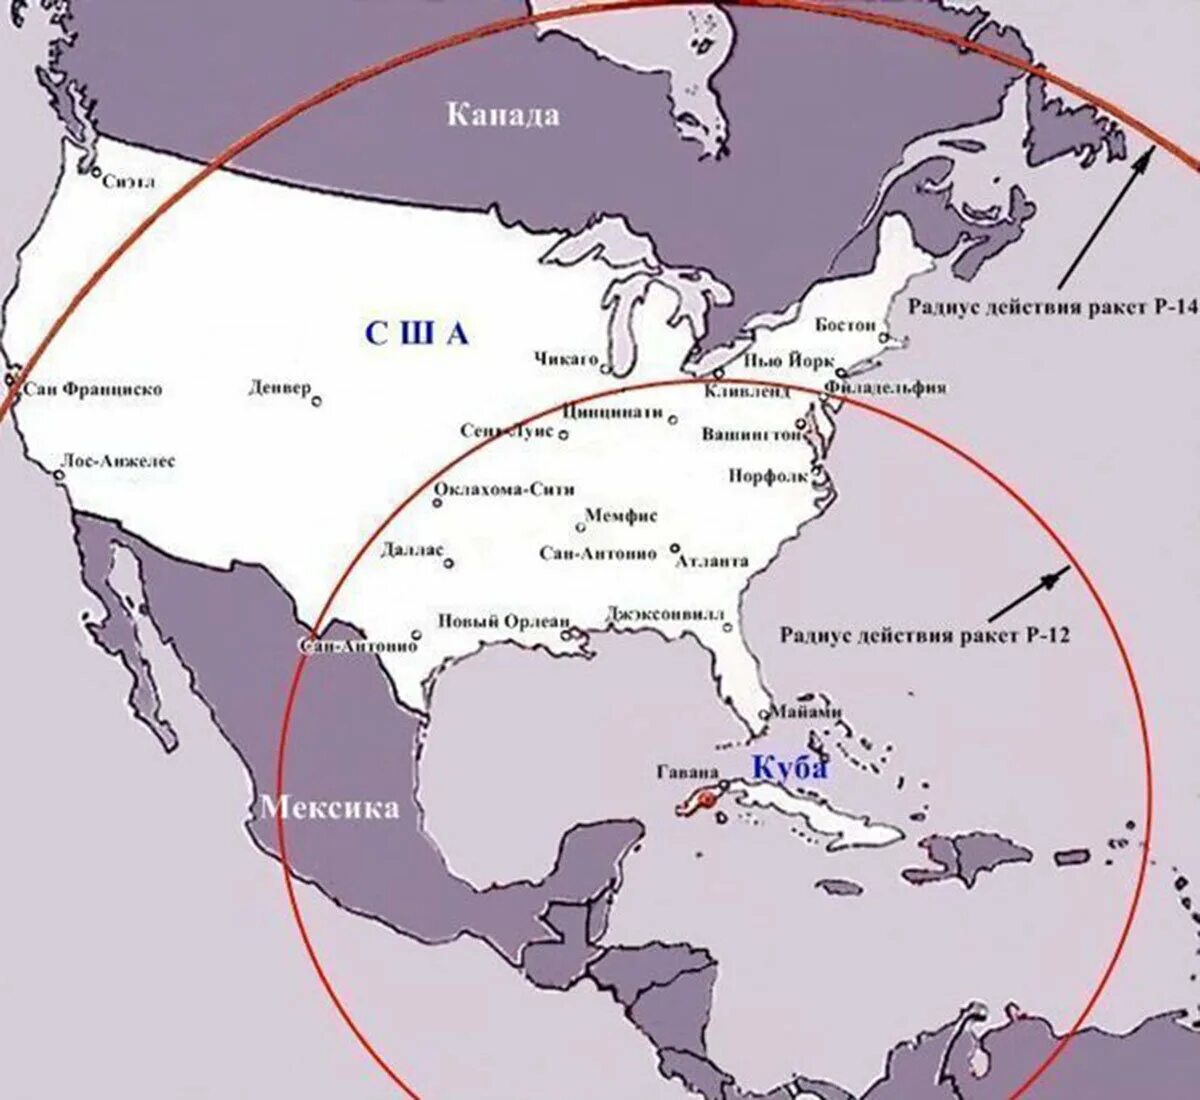 Карибский кризис какие страны. Карибский кризис 1962 карта. Радиус действия советских ракет на Кубе. Карибский кризис 1962 размещение ракет в Турции. Карибский кризис 1962 операция Анадырь.